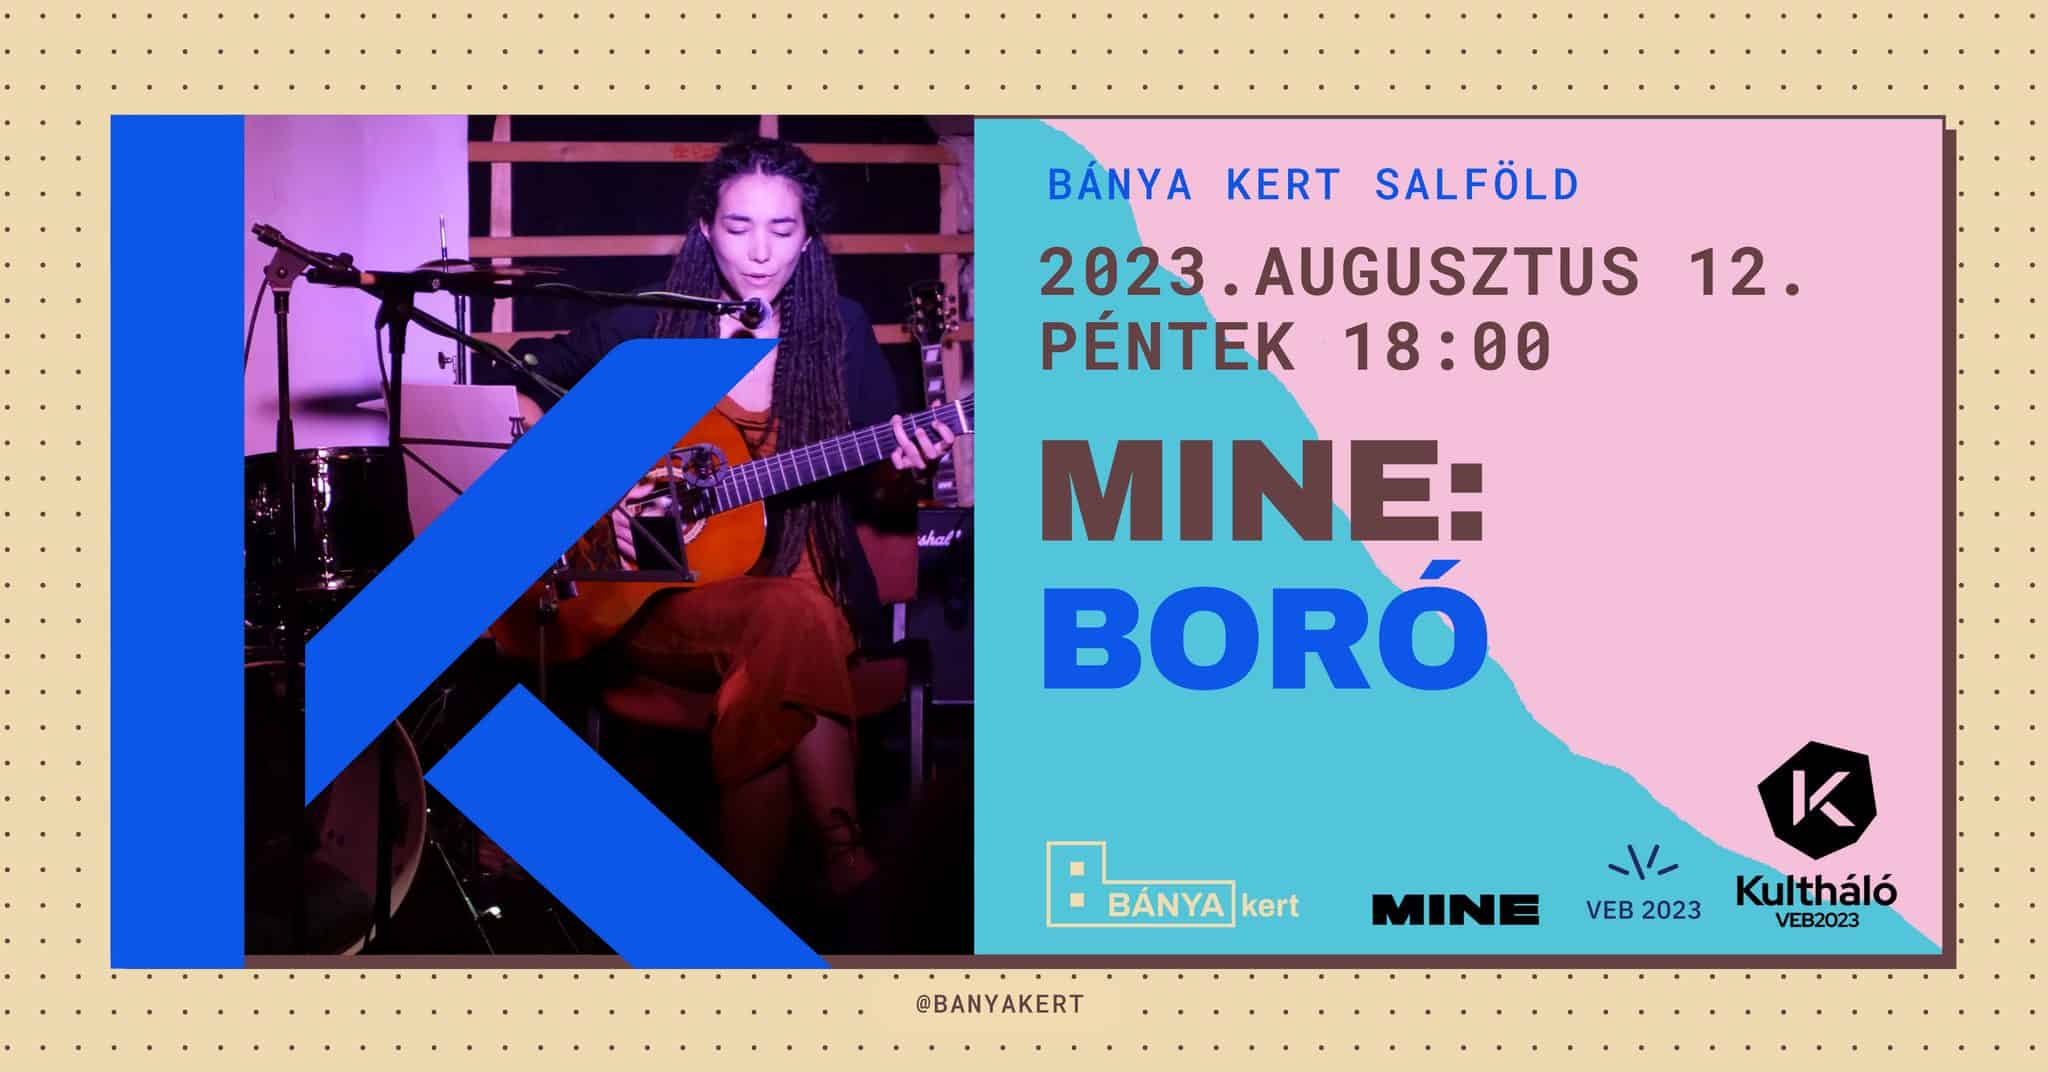 MINE⁝ Boró / / Kultháló VEB2023 program 2023 08 12